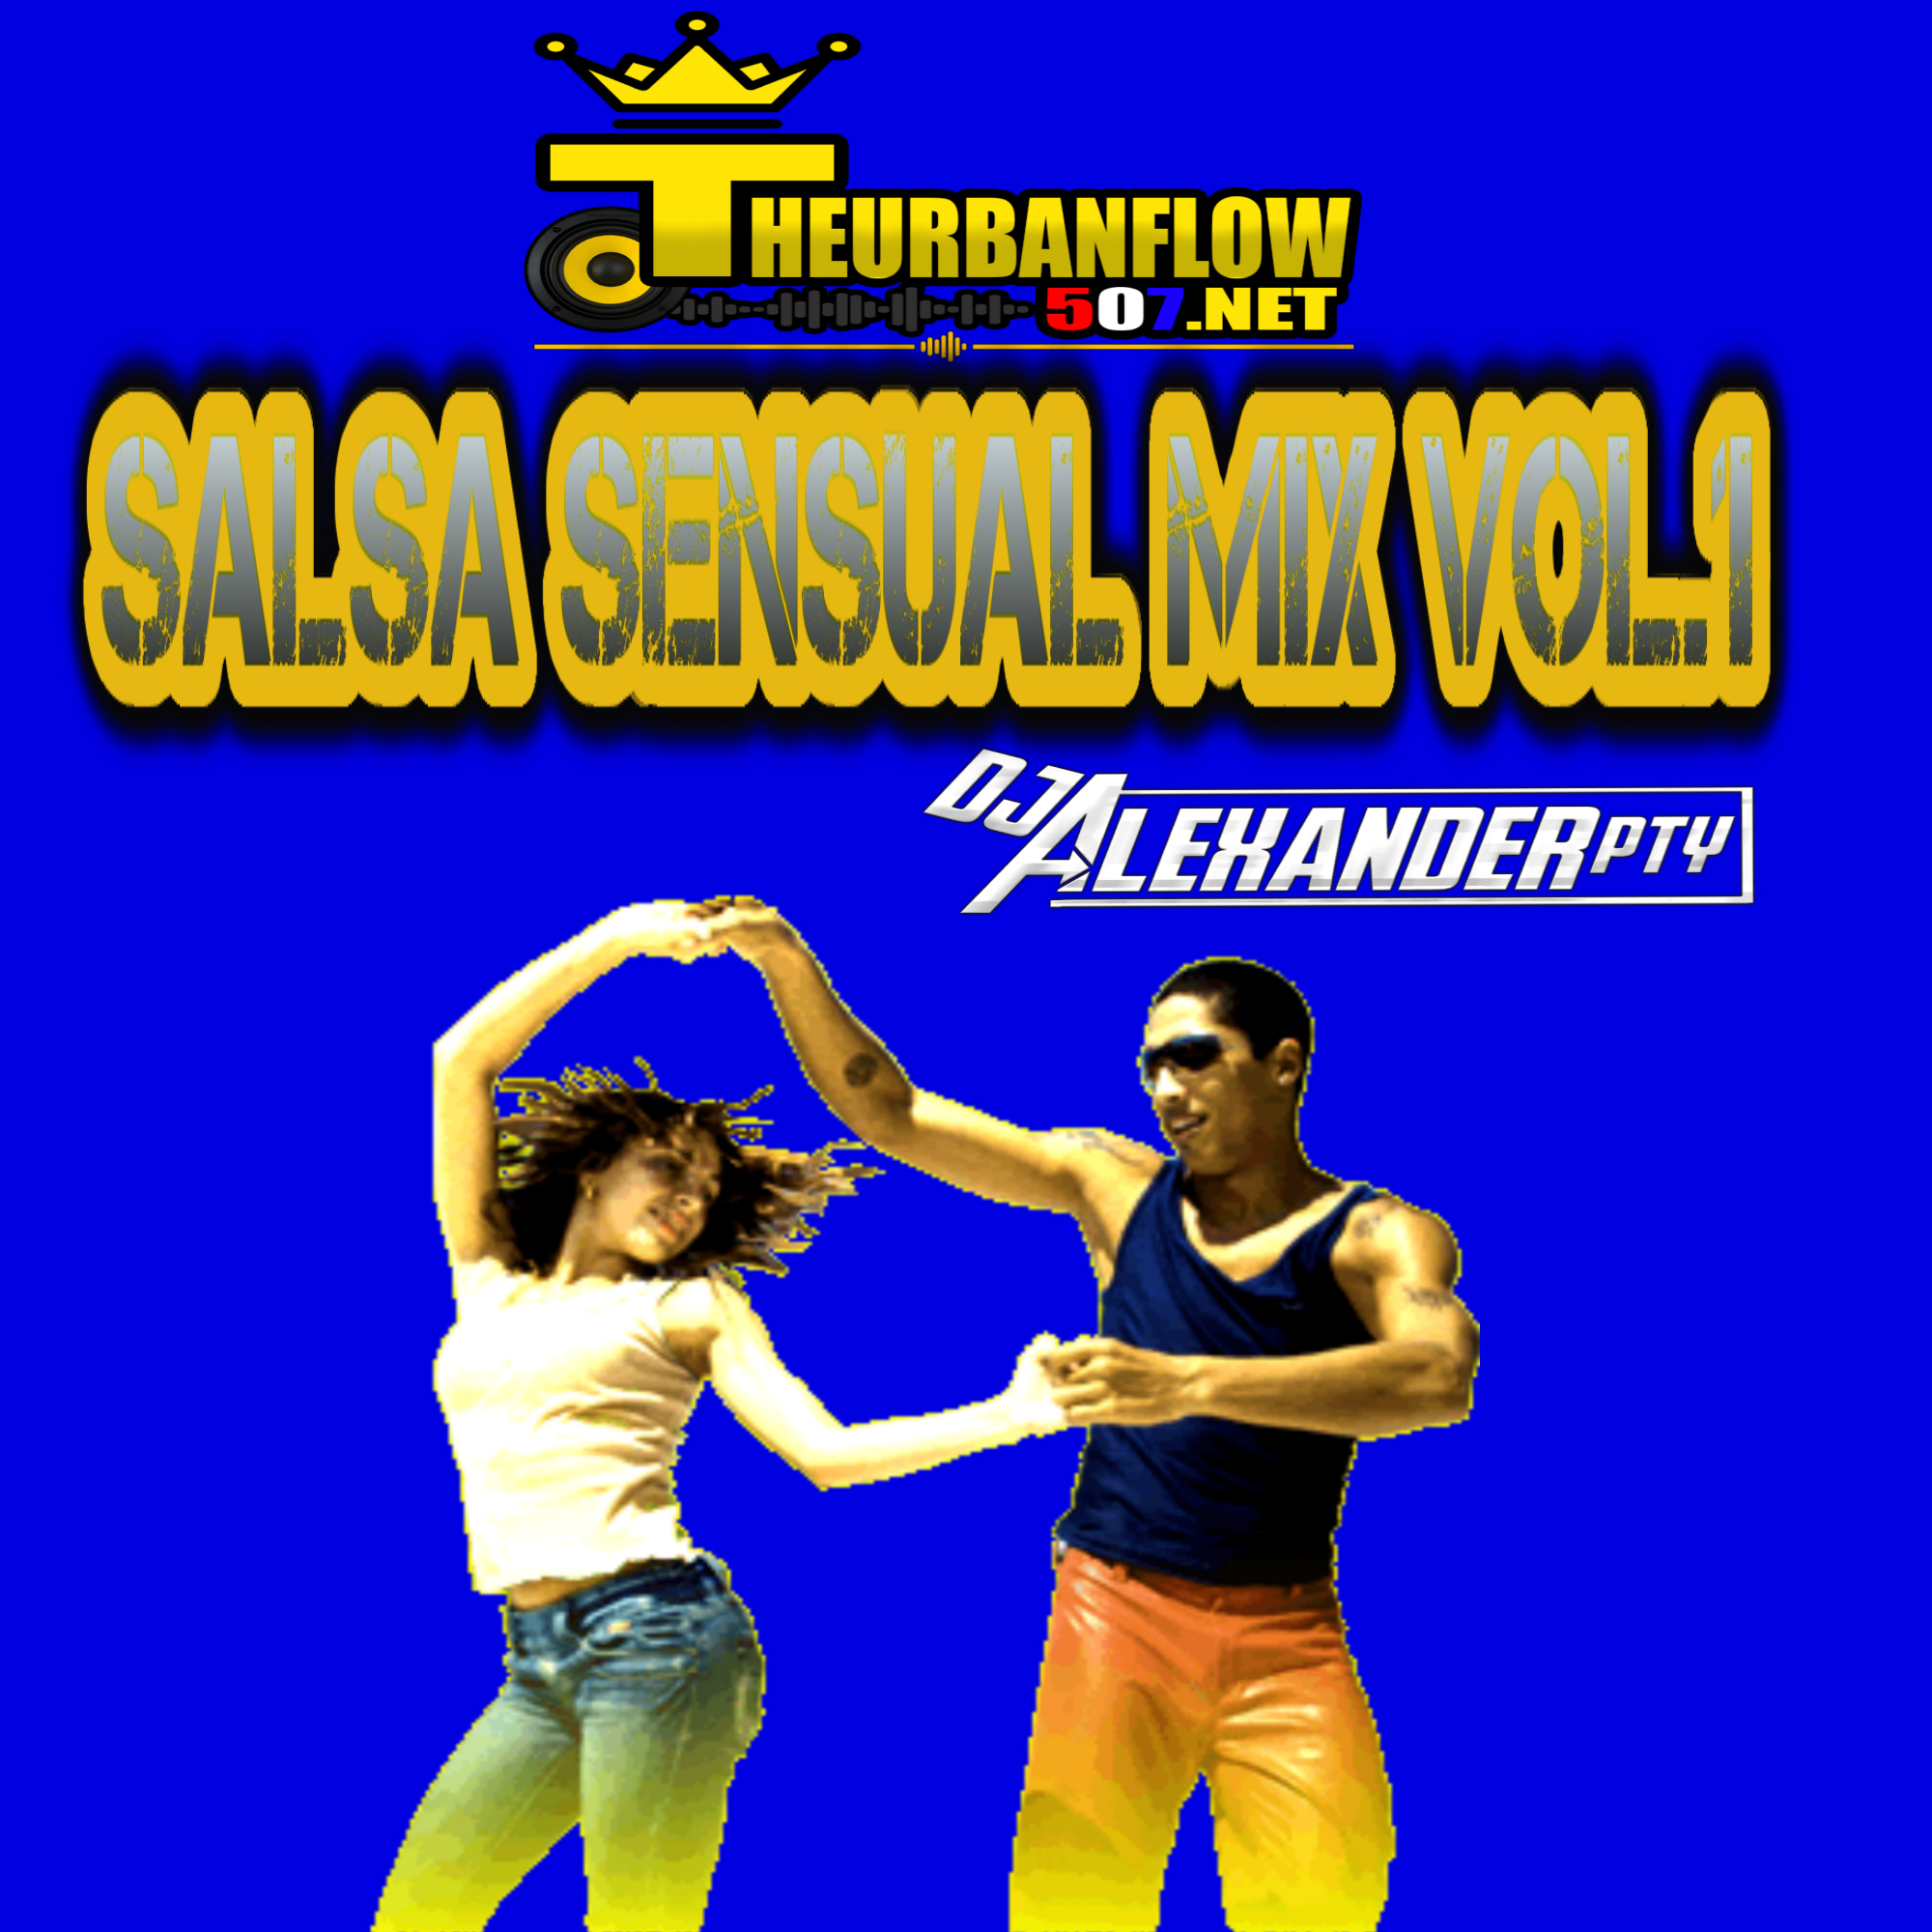 Salsa Sensual Mix Vol.1 - @DjAlexanderpty